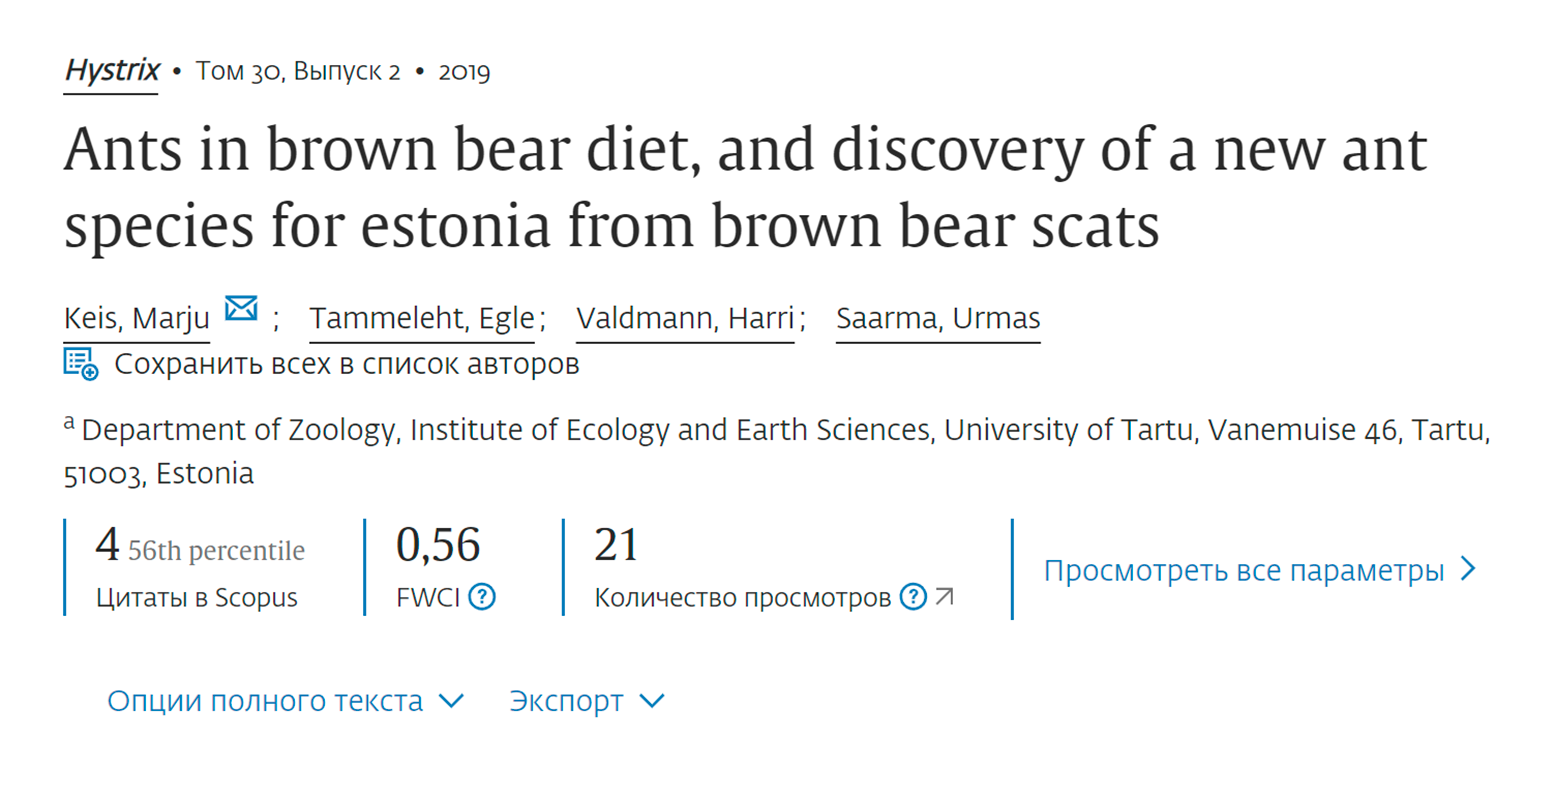 А это связанная с темой исследования статья о том, как в помете бурых медведей обнаружили новый вид эстонских муравьев